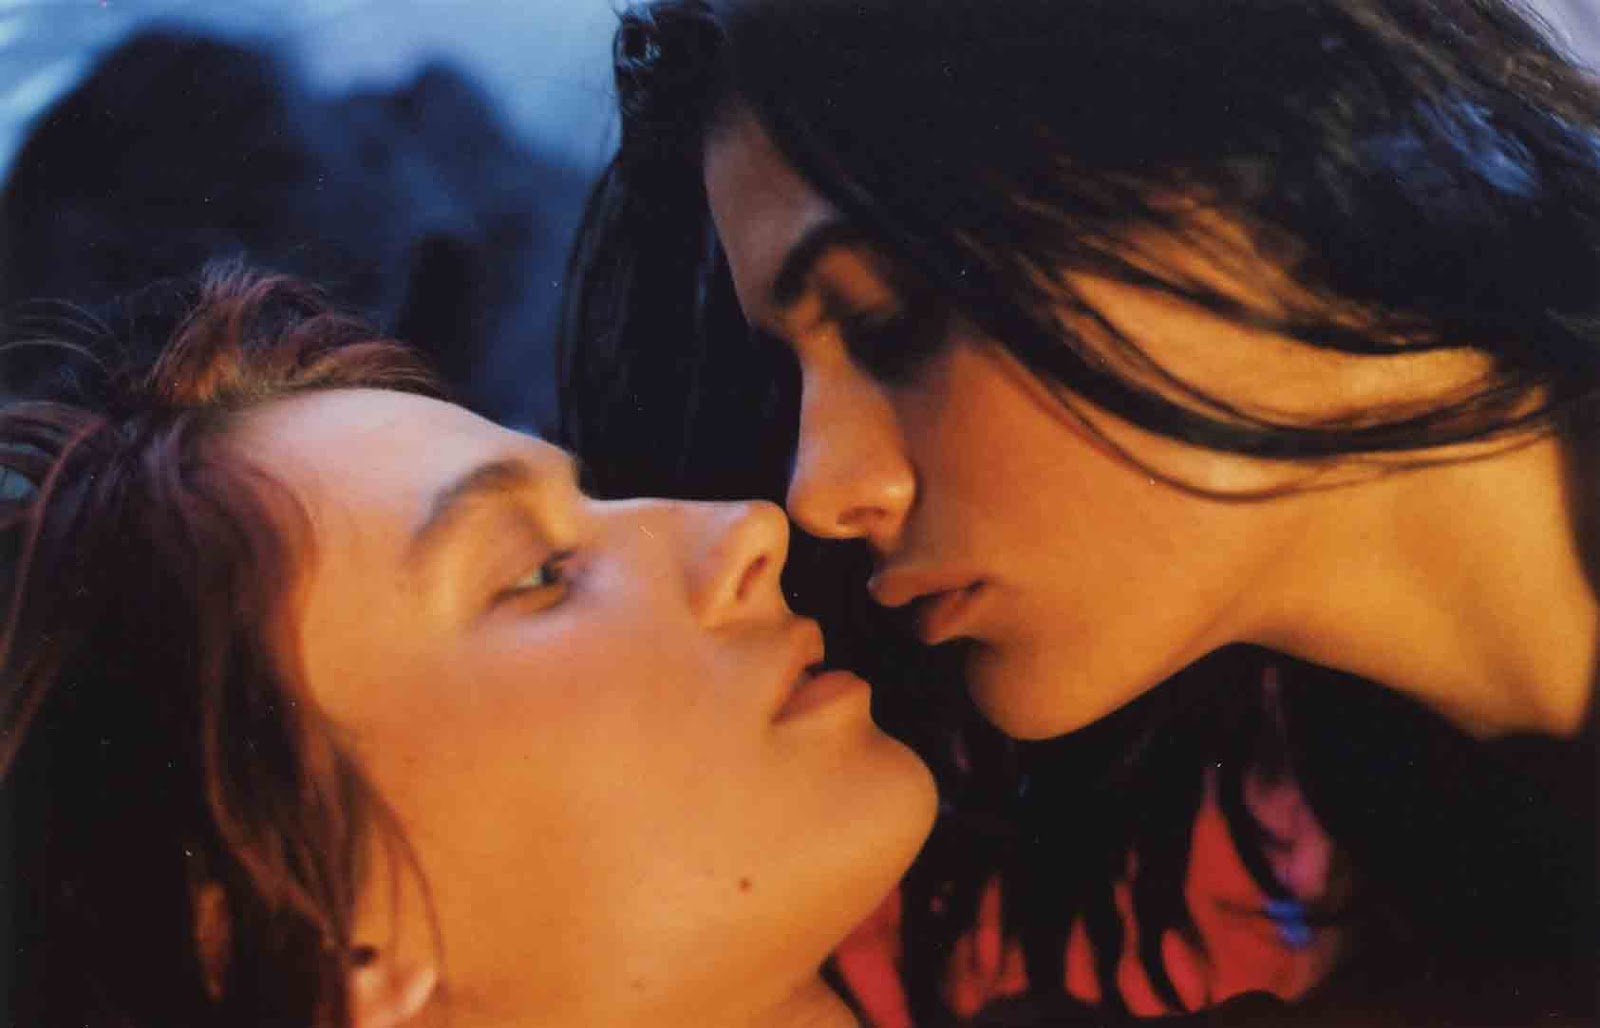 Lesbian Kiss In Film 29